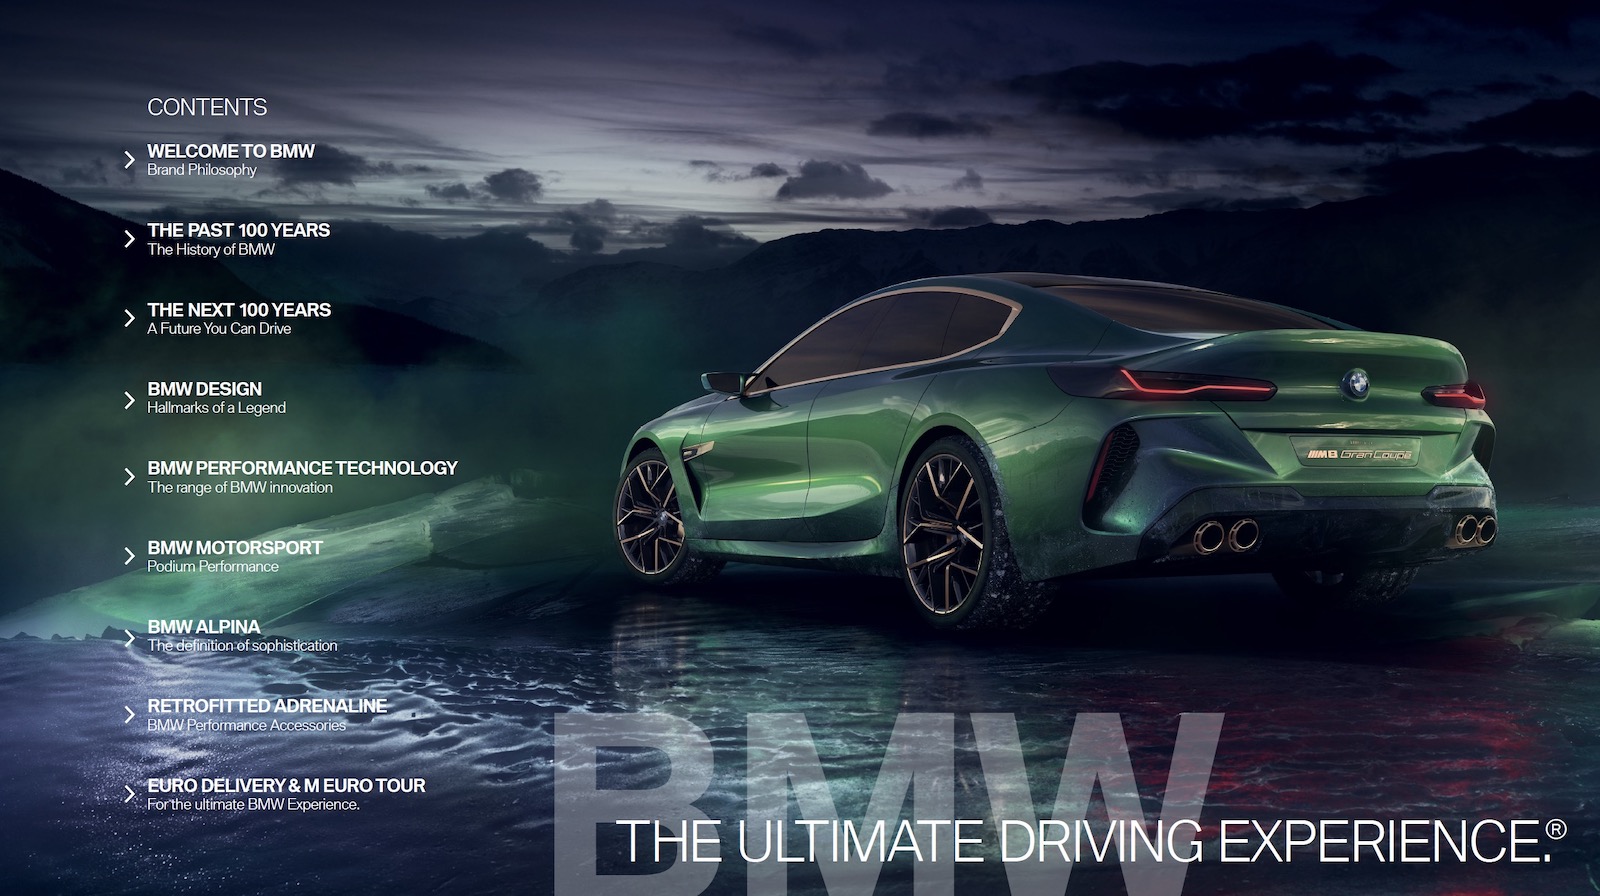 Vega Digital Awards Winner - The DNA of BMW, RITTA